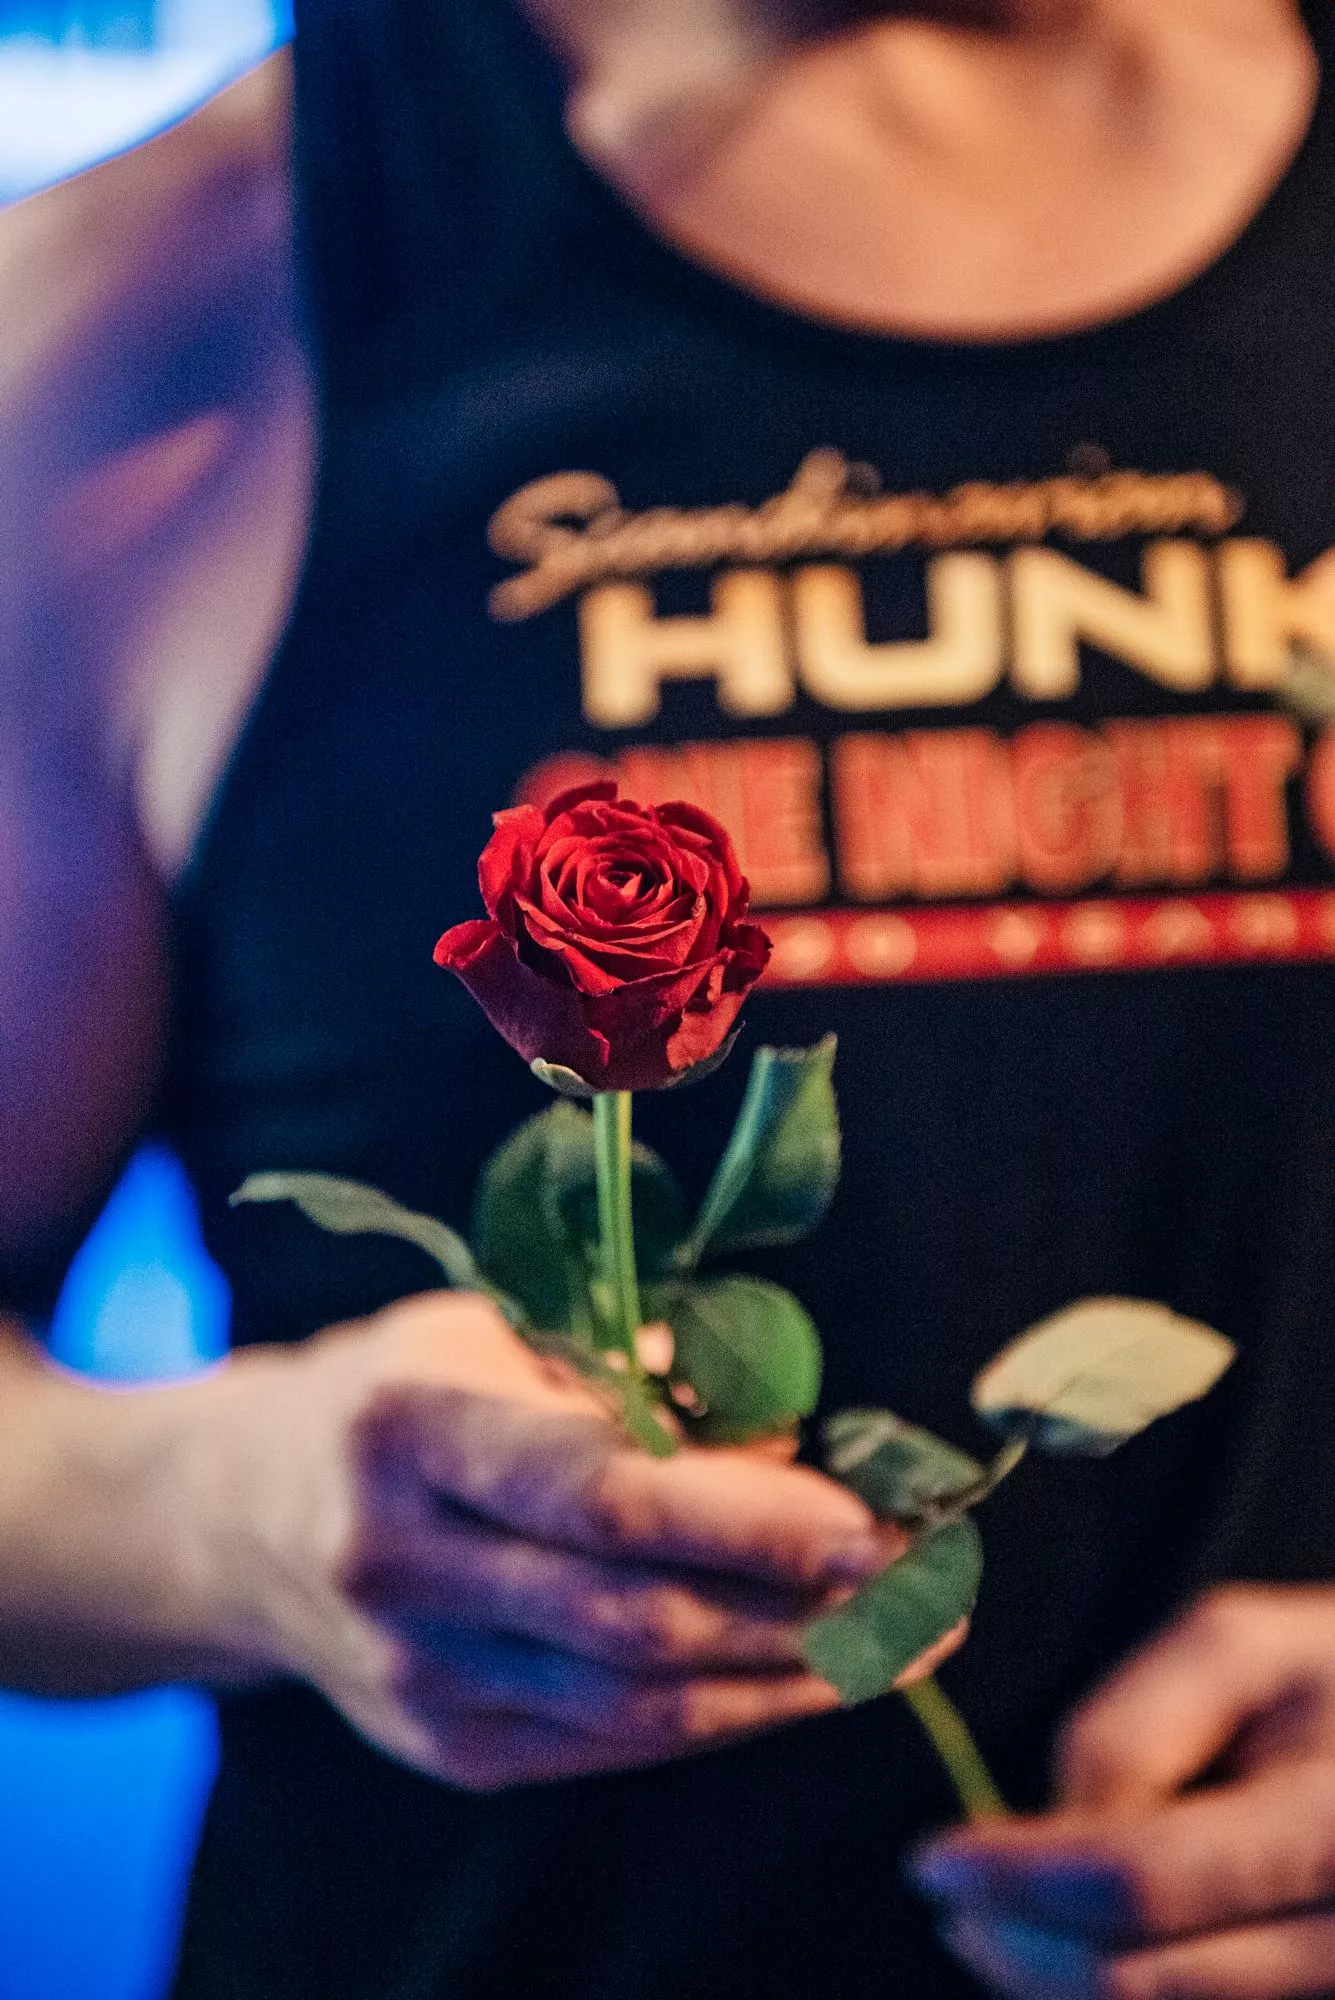 Jokaisessa esityksessä Hunksit jakavat ruusuja katsojille. Ruusunpiikit he nyppivät yksitellen pois.